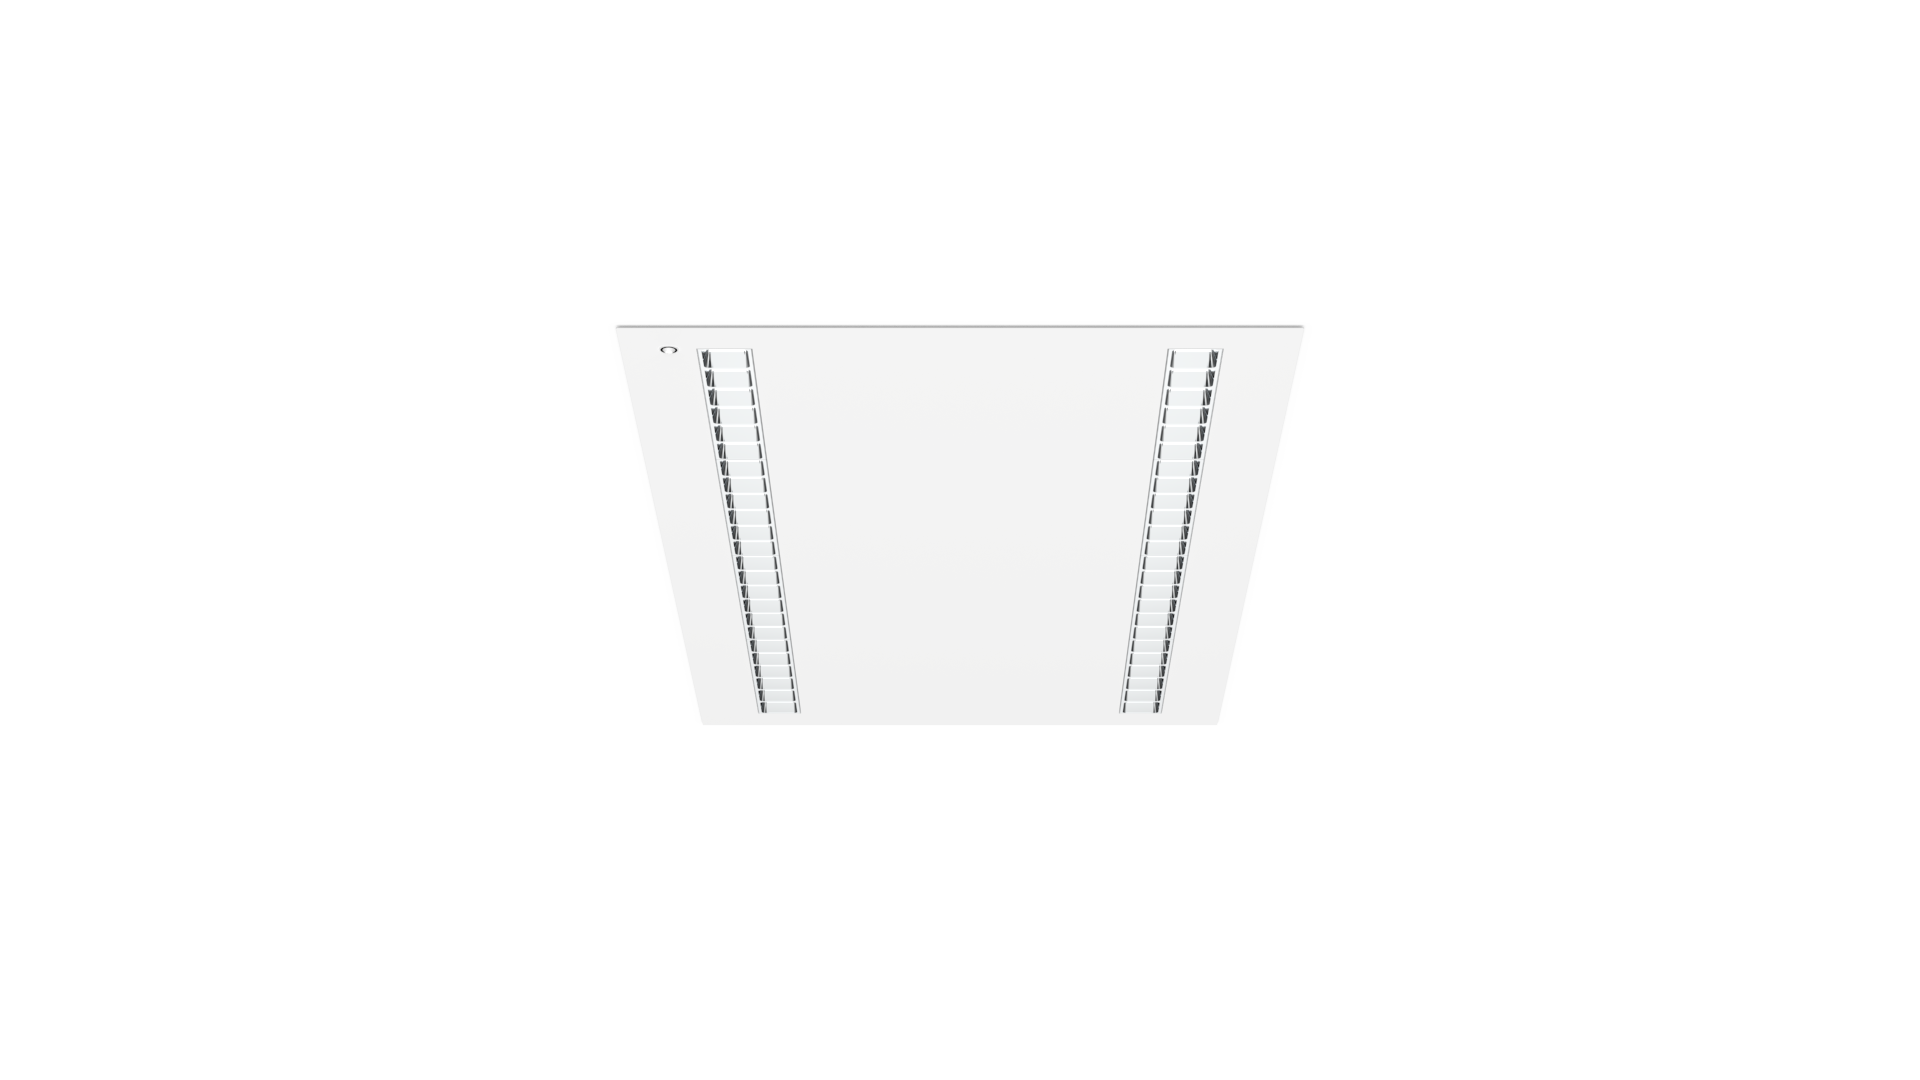 MODUX PL5 120x60 Empotrado hueco cortado marco visto Con detector Reflector UGR3D especular Blanco HR escala